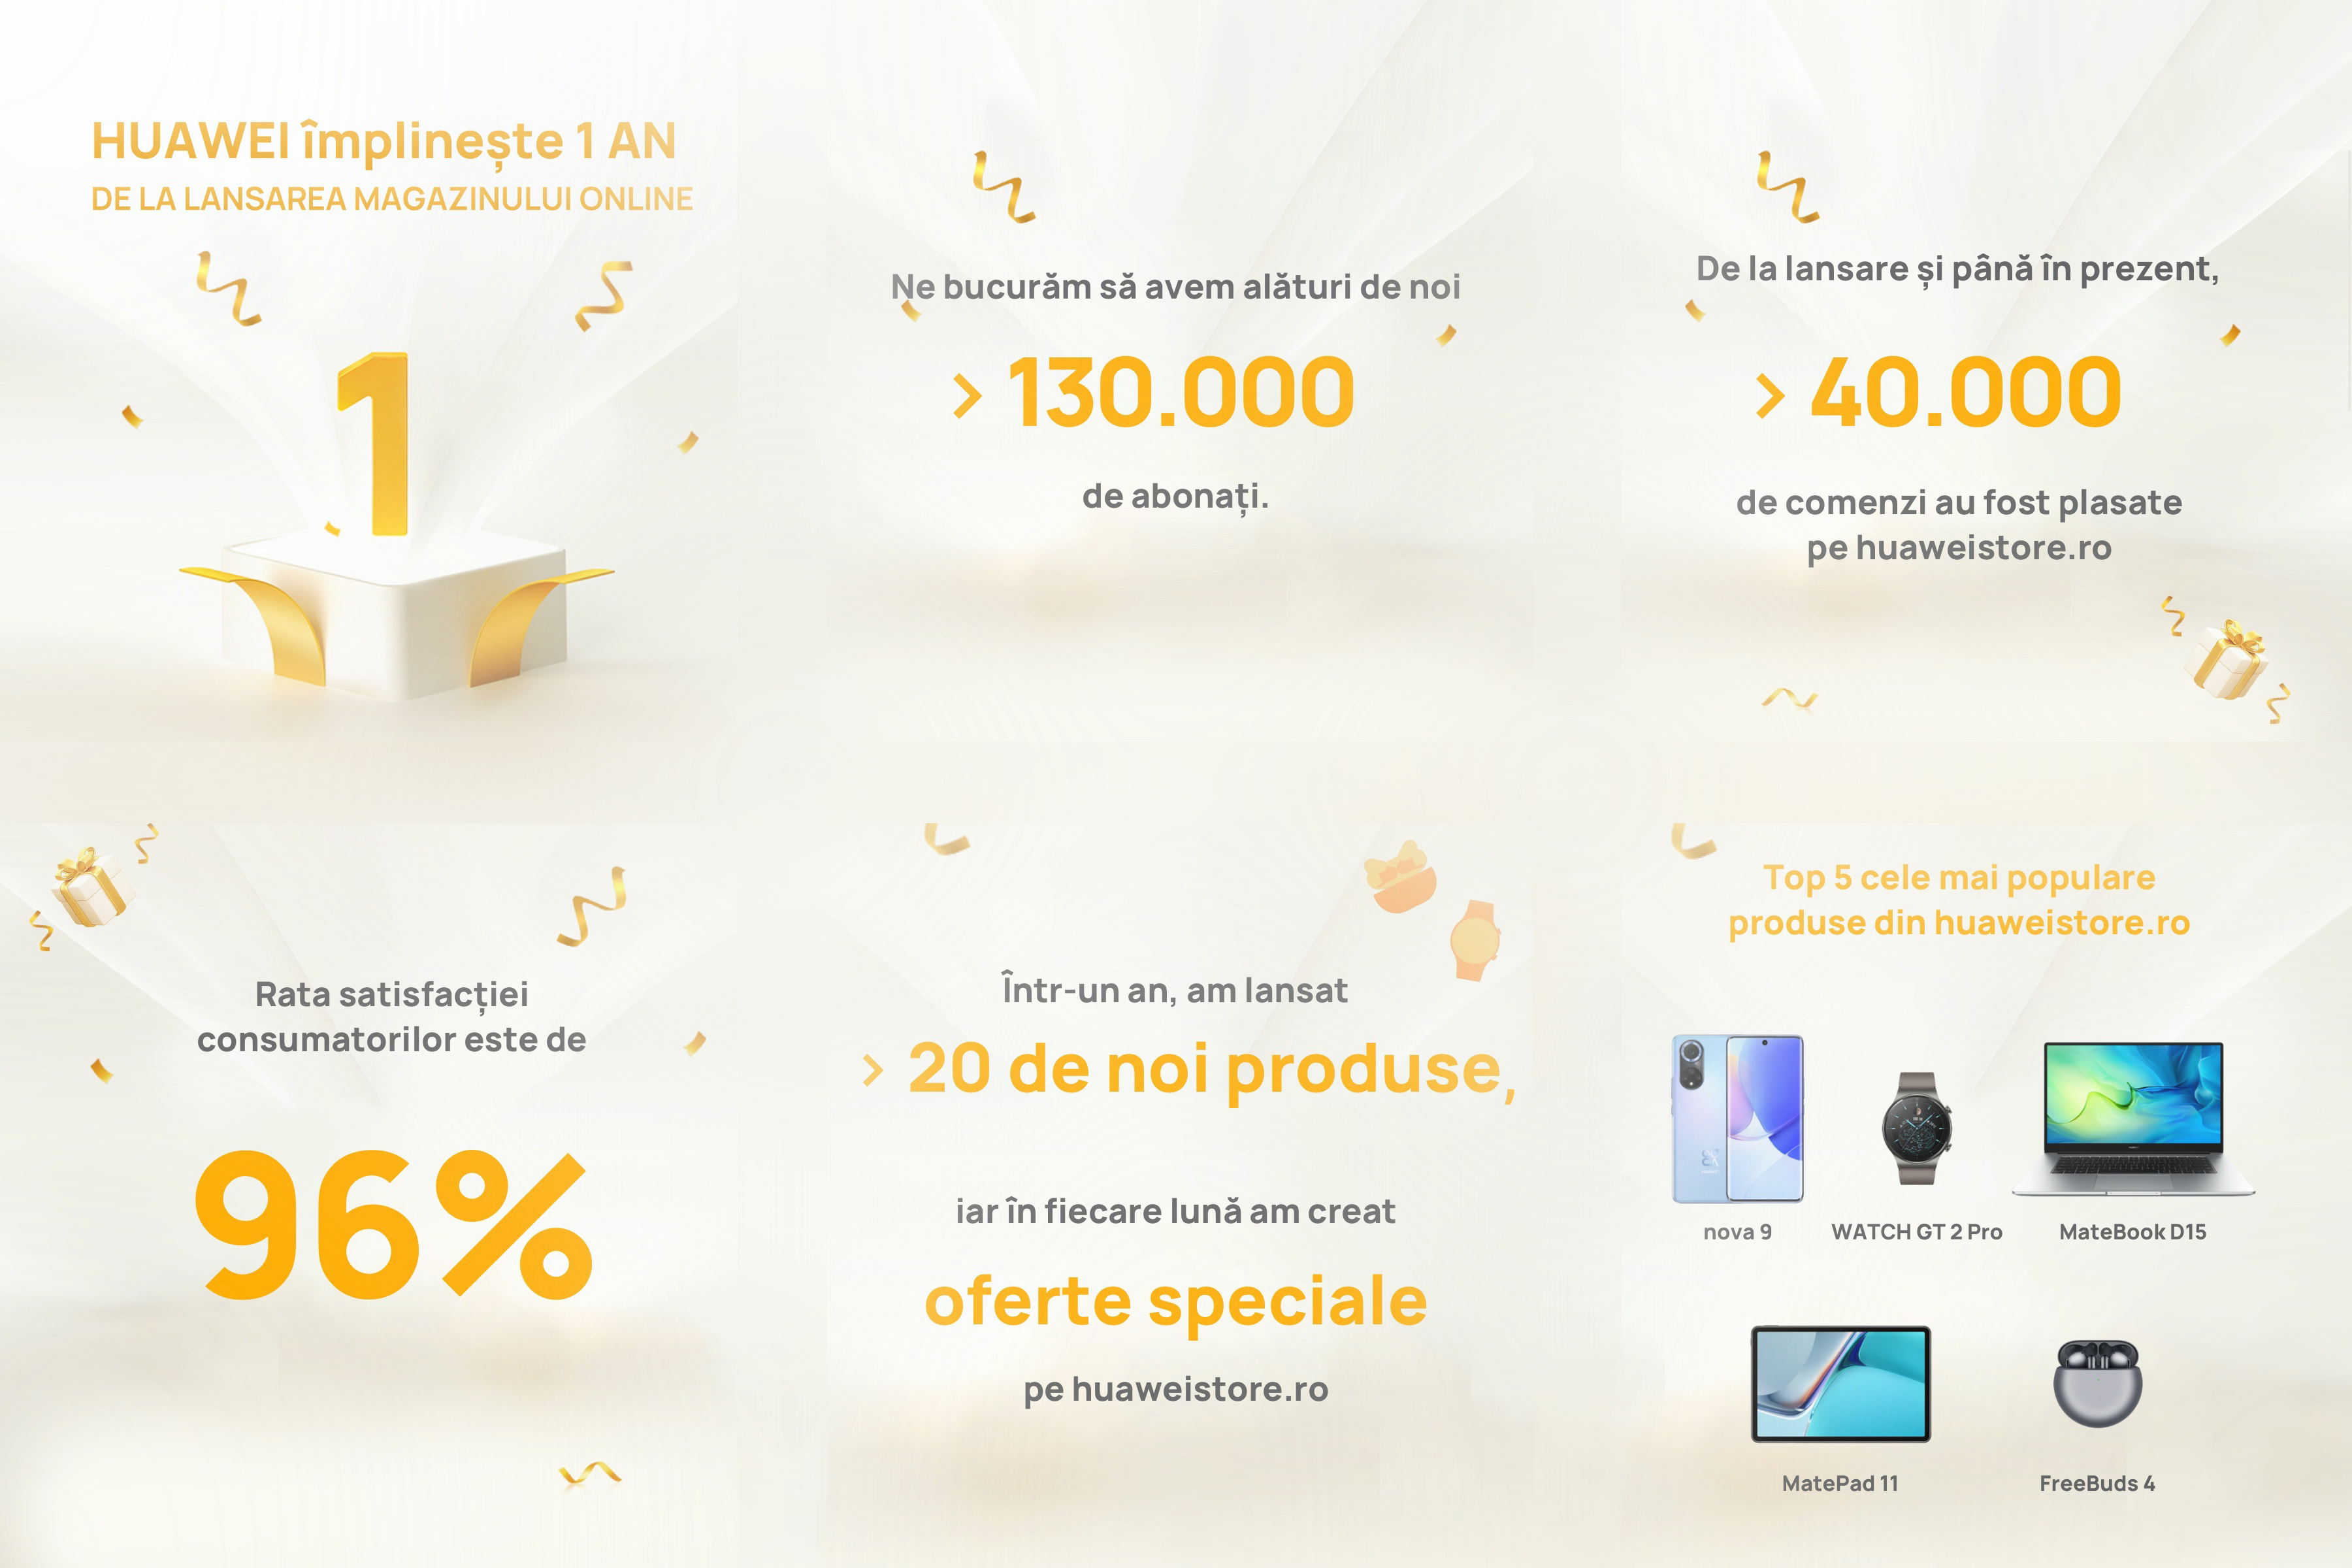 Huawei sărbătorește 1 an de la lansarea magazinului online cu premii zilnice pe huaweistore.ro